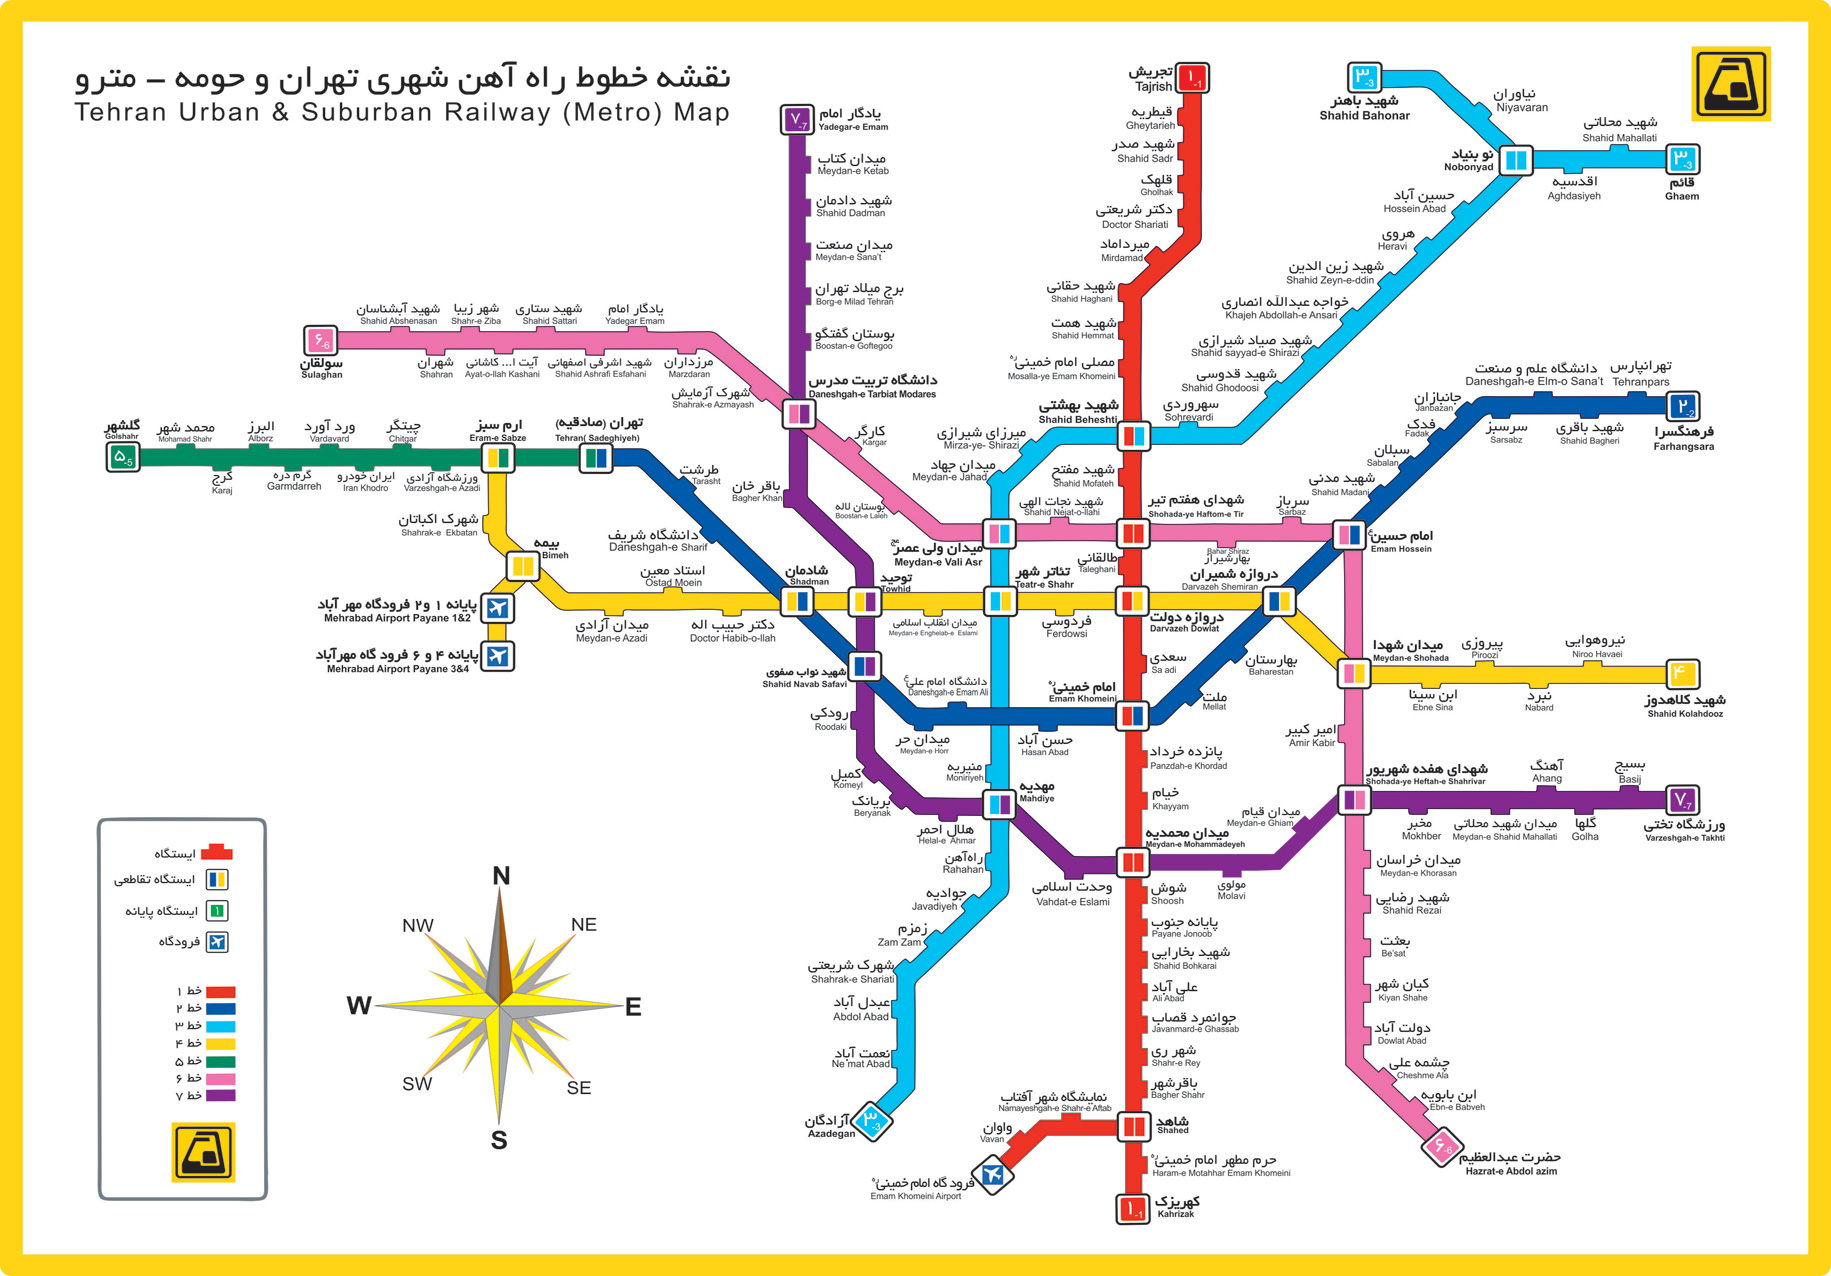 عکس نقشه مترو تهران با کیفیت
